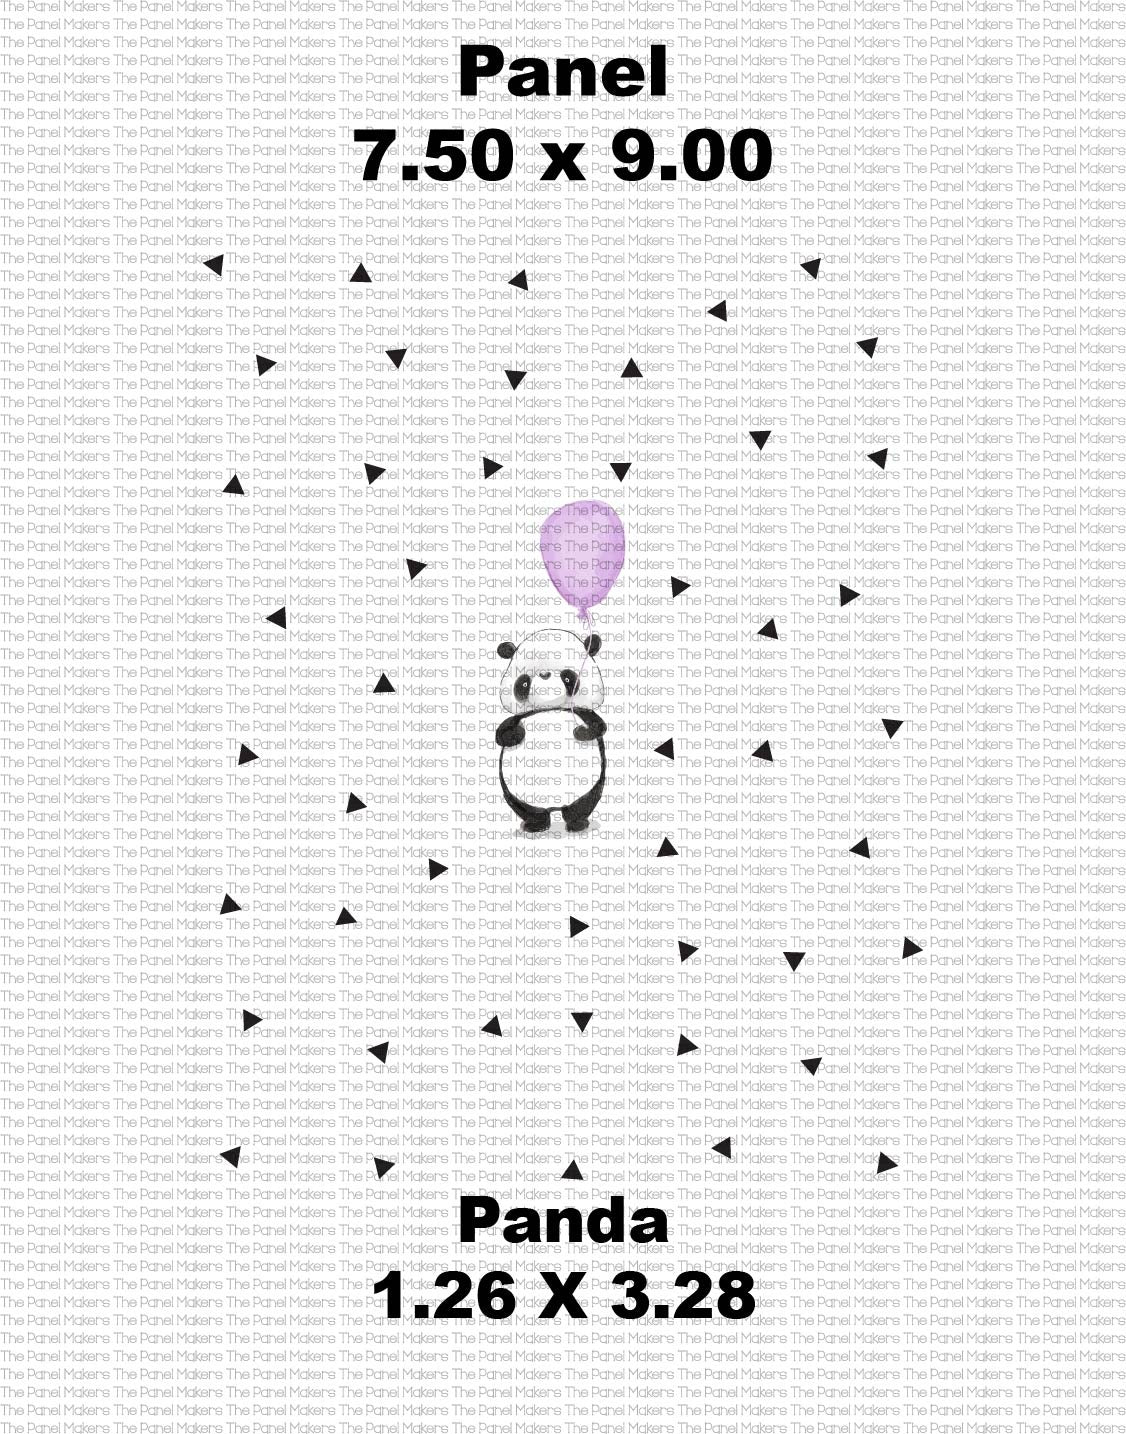 Purple Balloon Panda Small Doll Sized panel